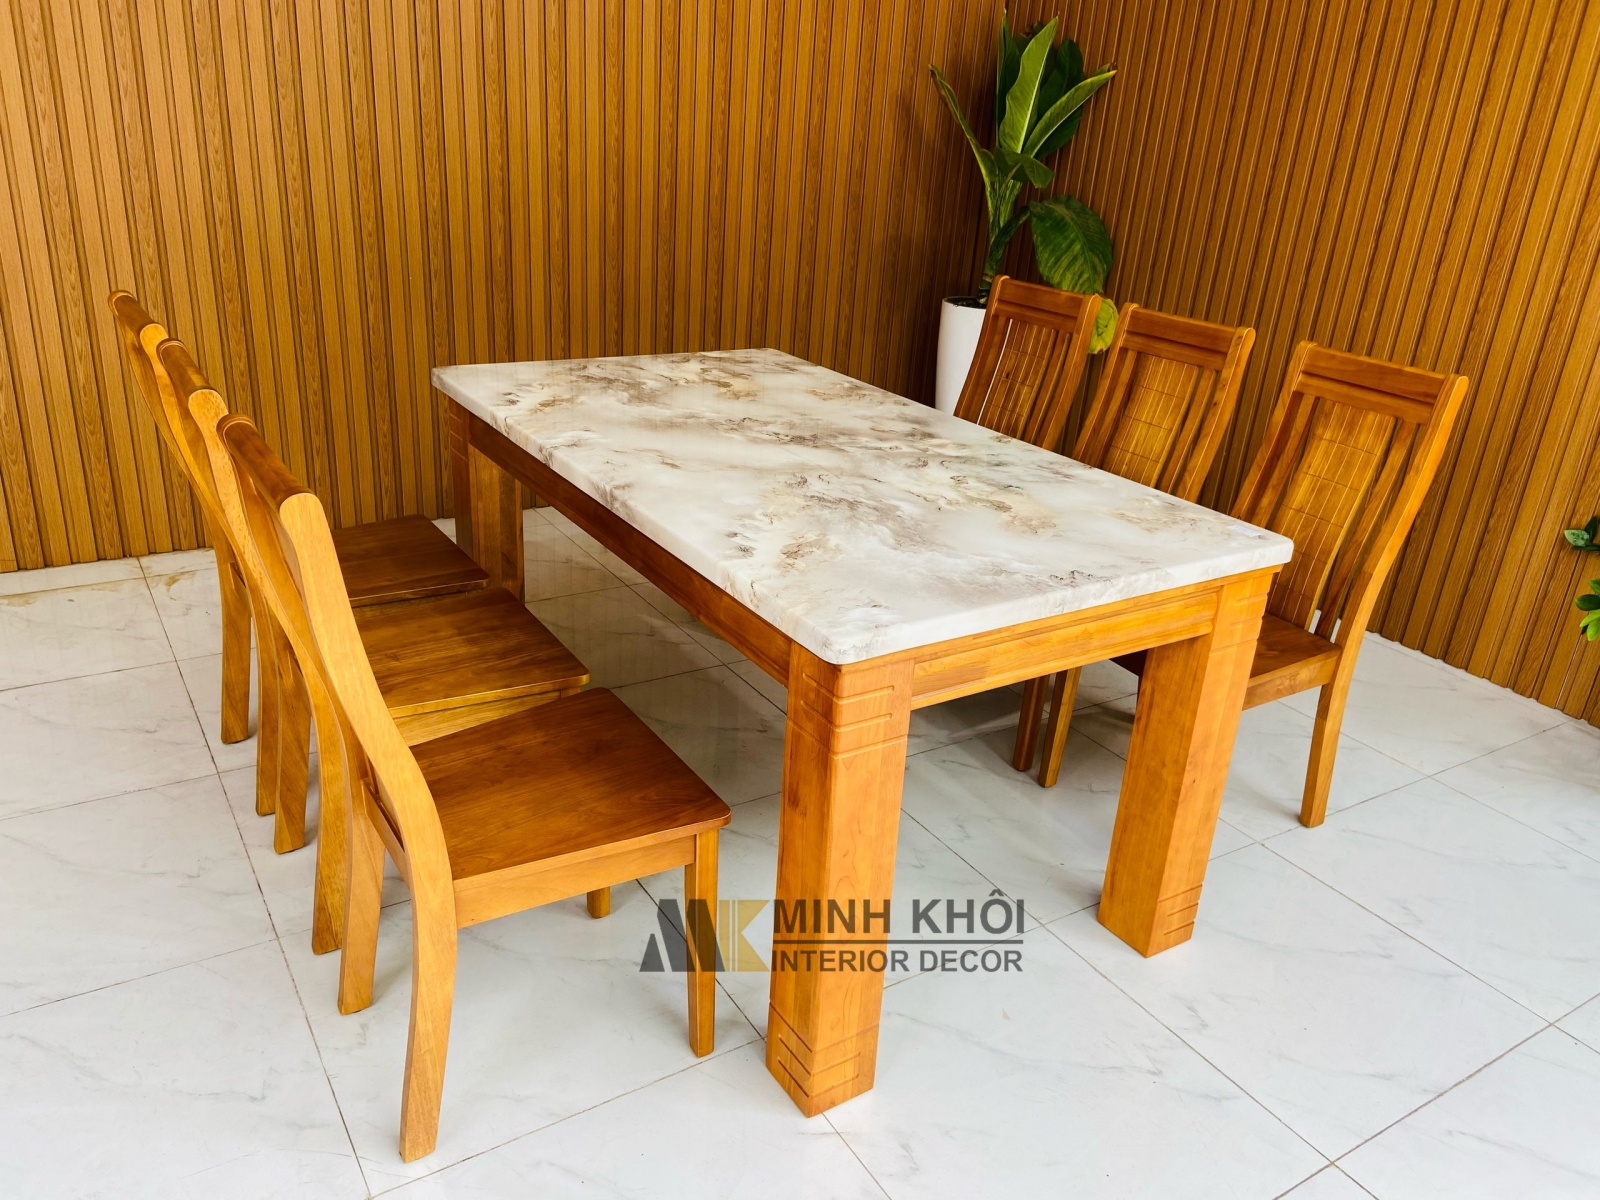 Bộ bàn ăn mặt đá gỗ xoan đào từ BA1004 sẽ mang đến không gian phòng ăn của bạn một sự kết hợp tuyệt vời giữa chất liệu gỗ xoan đào và đá tự nhiên. Với 6 ghế tiện ích và kiểu dáng hài hòa, bộ sản phẩm sẽ khiến cho không gian phòng ăn trở nên sang trọng và đẳng cấp.